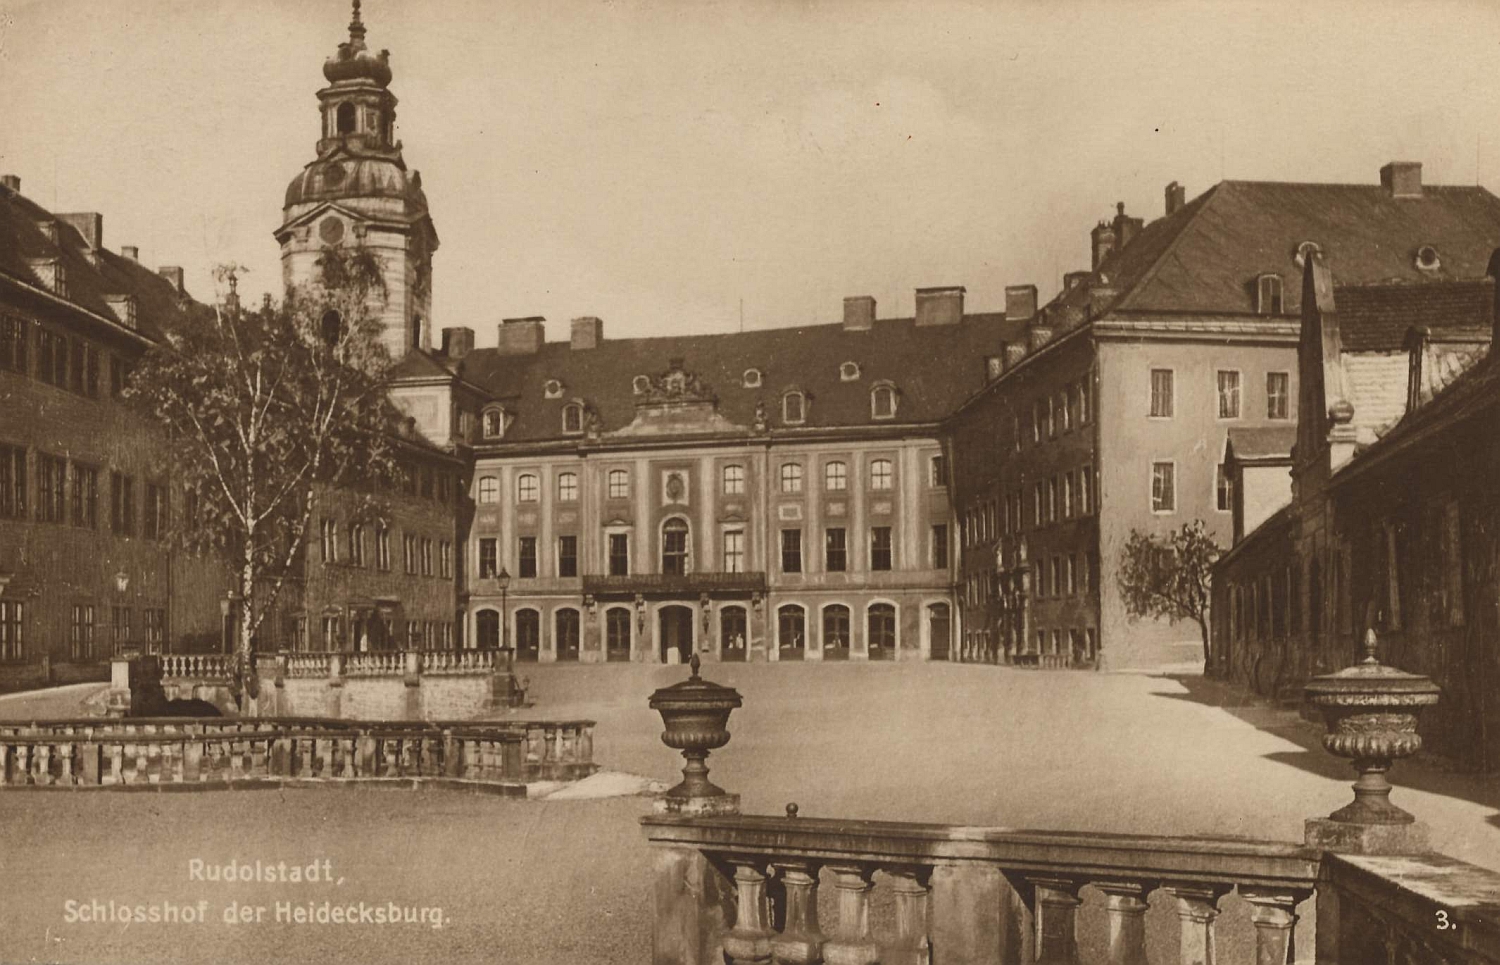 Eine Ansichtskarte zeigt den Schlosshof der Heidecksburg Anfang des 20. Jahrhunderts. Das Schloss Heidecksburg ist das ehemalige Residenzschloss der Fürsten von Schwarzburg-Rudolstadt.